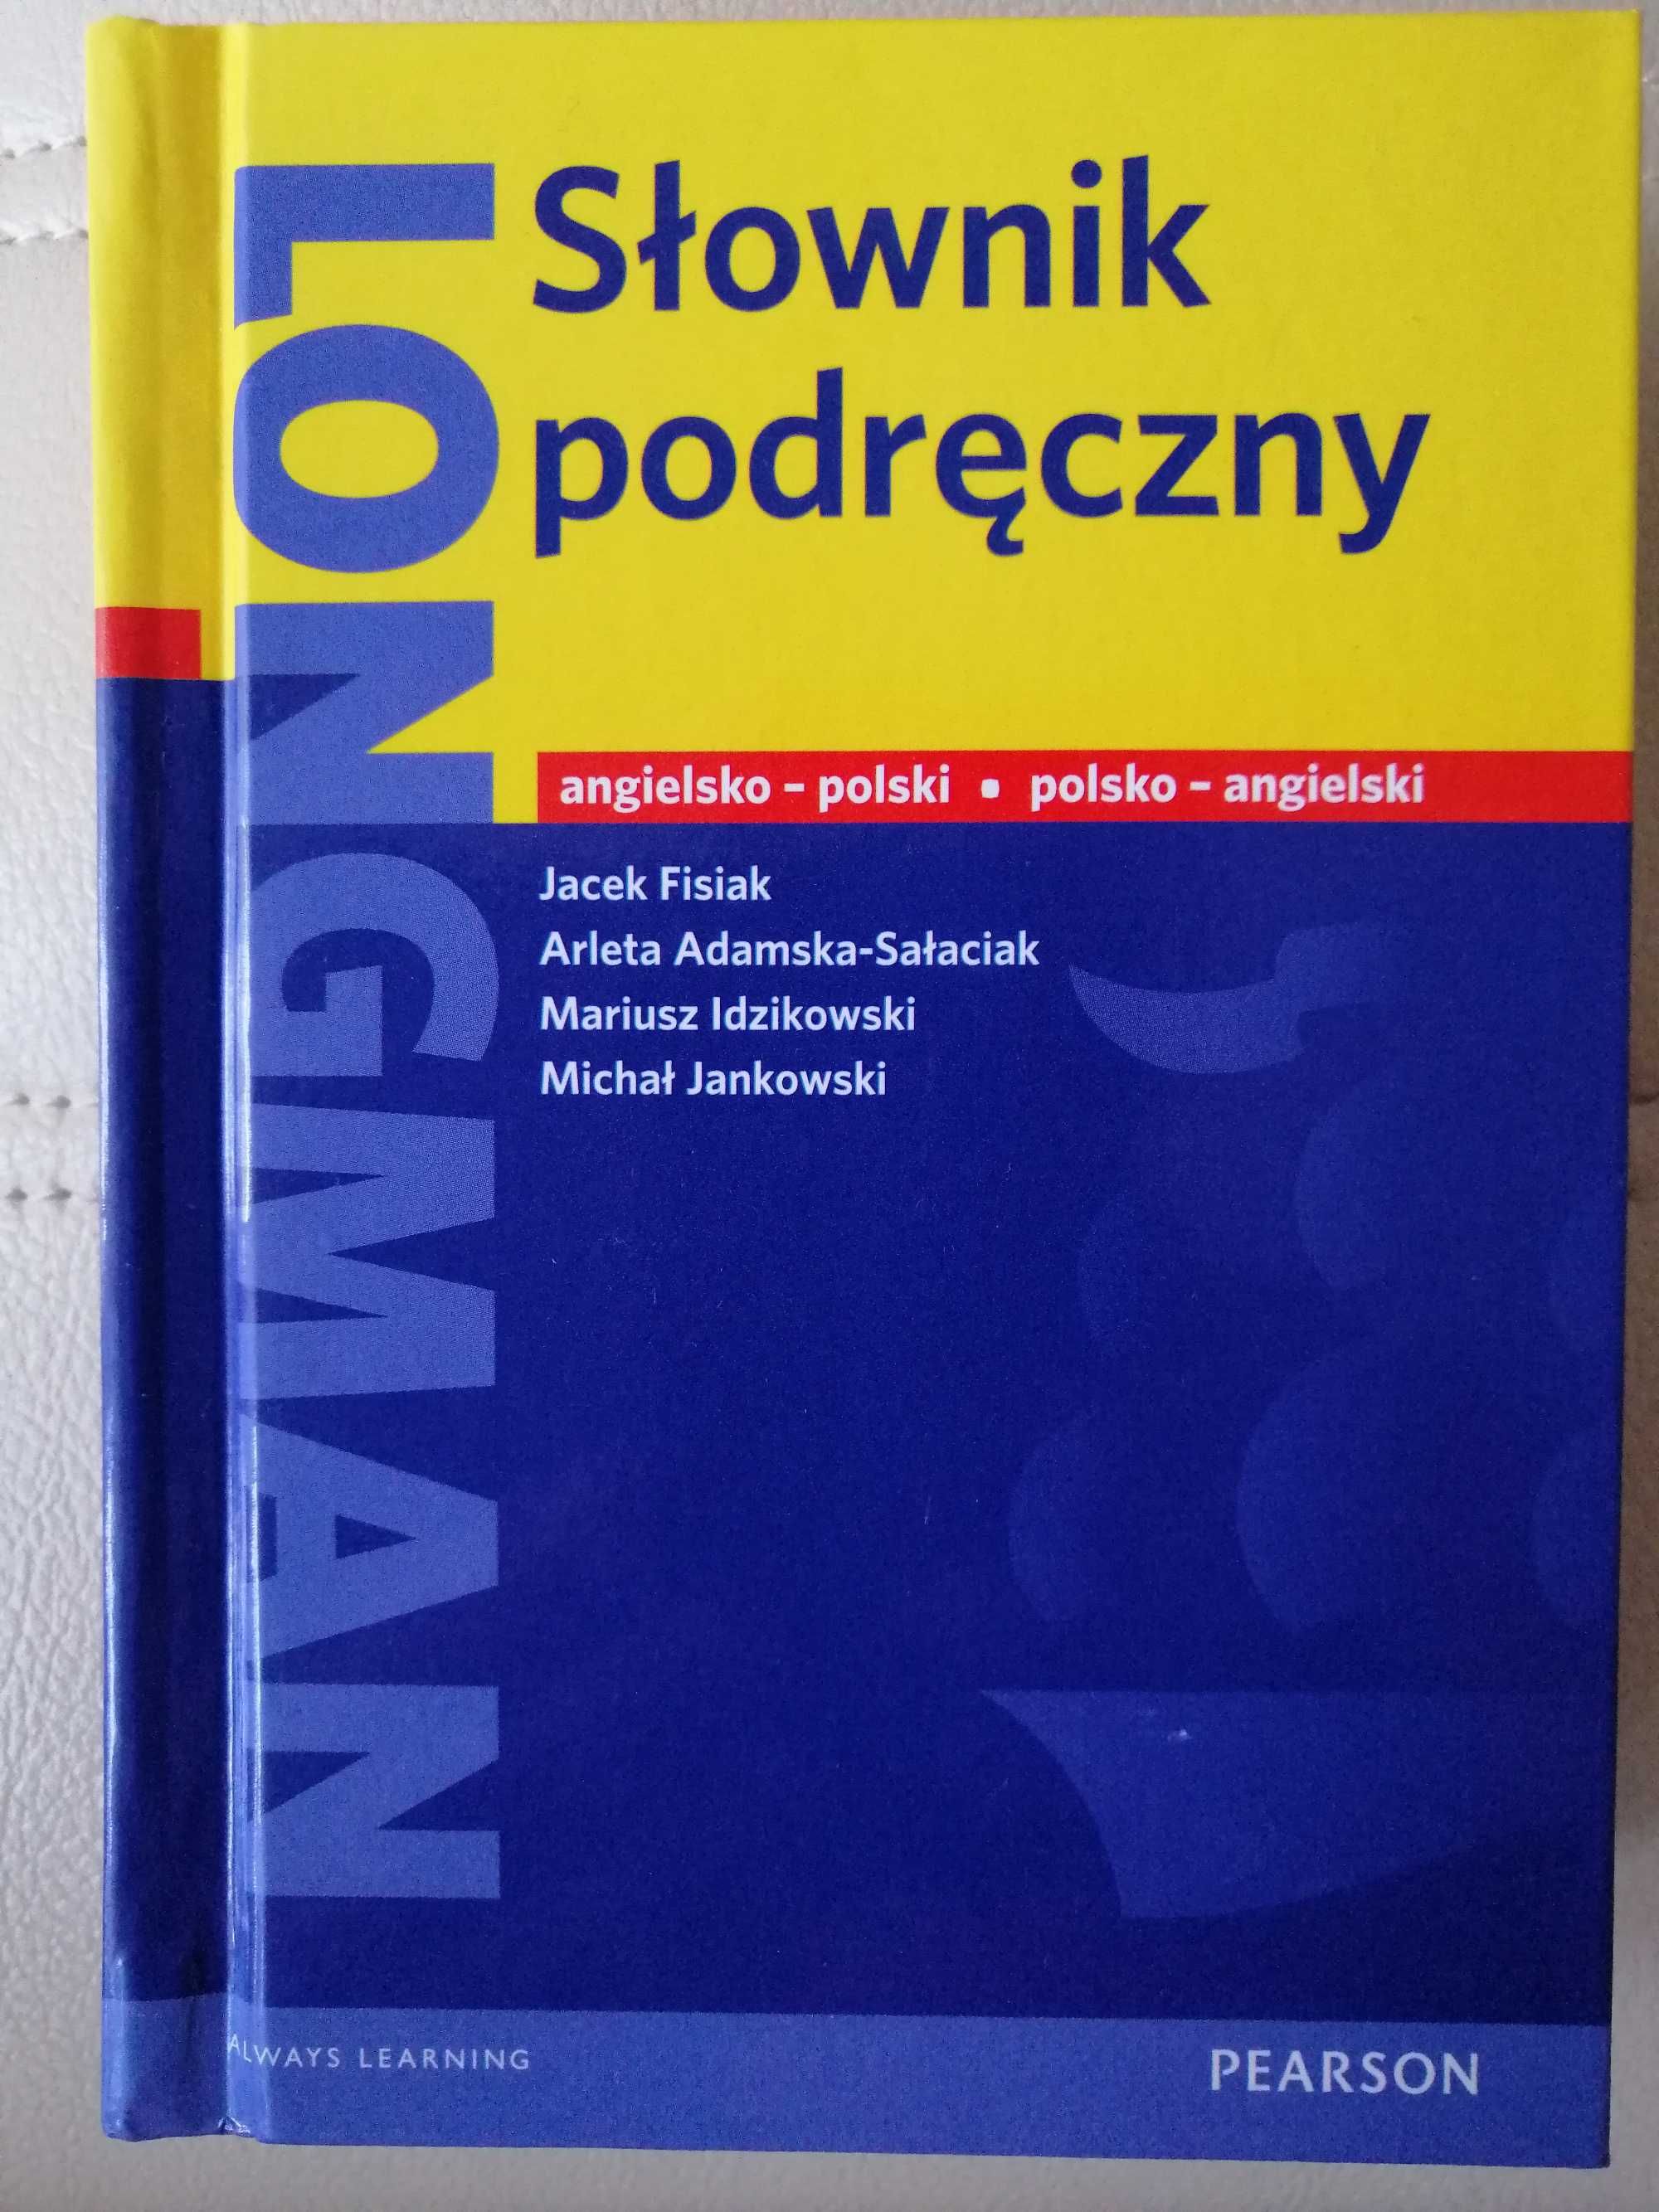 Podręczny słownik angielsko - polski i polsko - angielski Longman